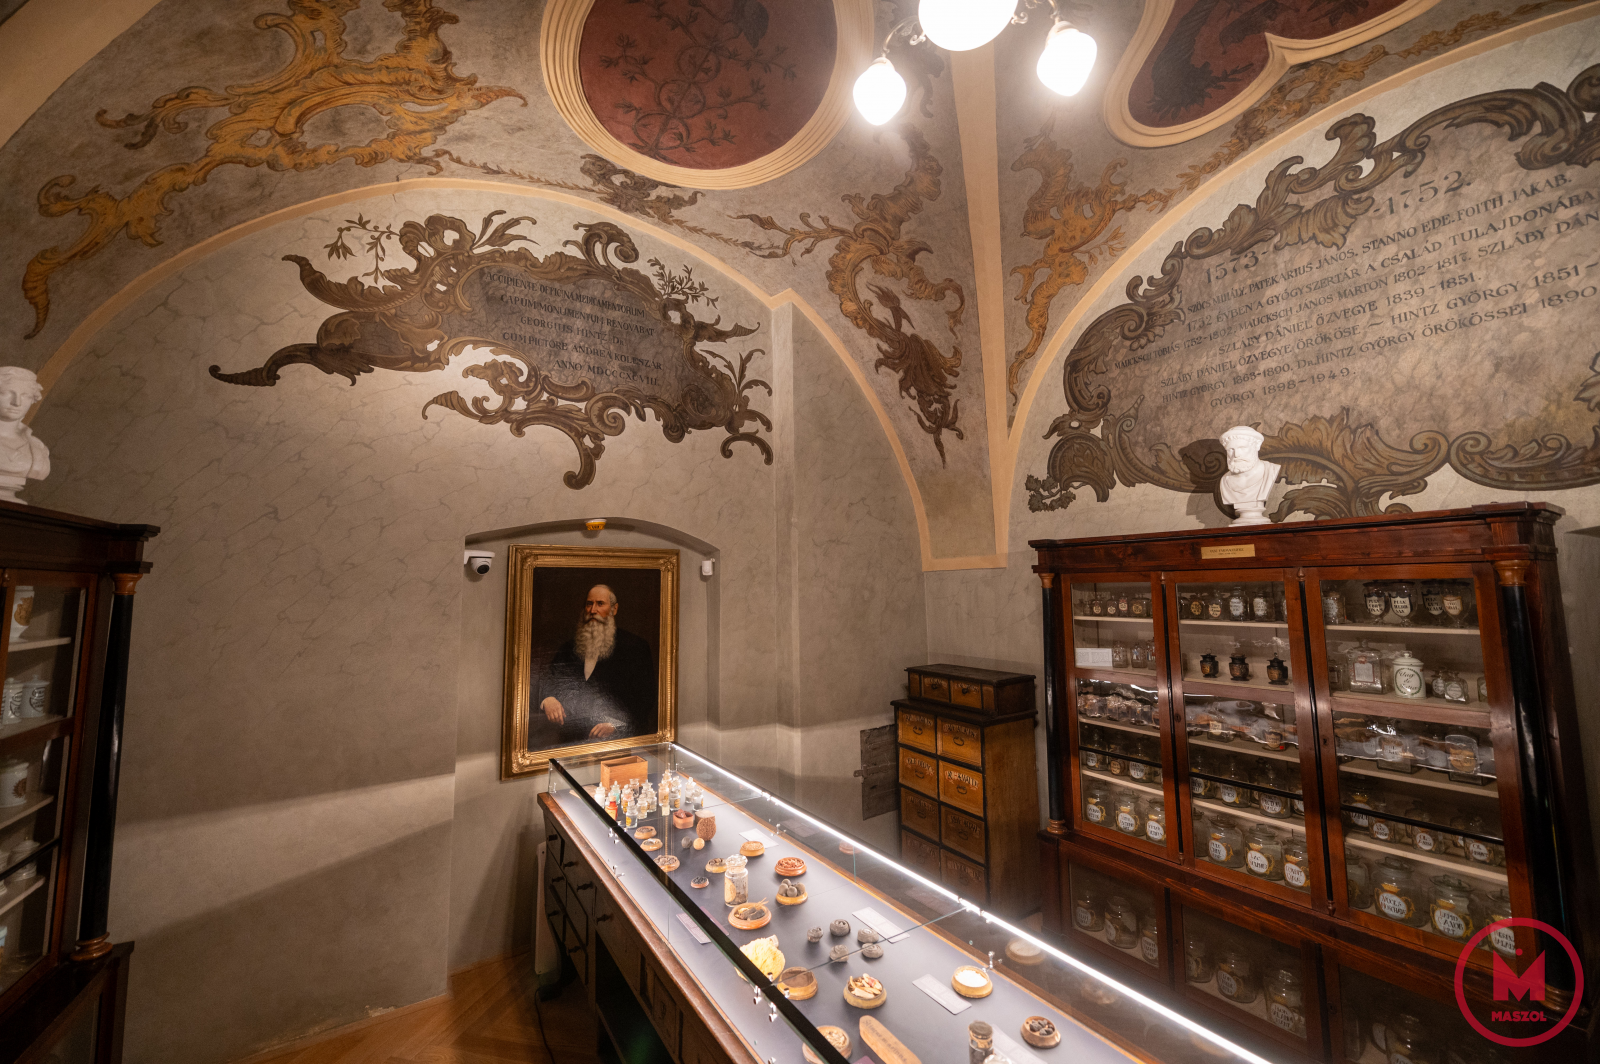 A régi officína az a helyiség, ahol a 18. században a gyógyszereket árulták és a vásárlókkal érintkeztek. Ez egy festményekkel és feliratokkal gazdagon díszített helyiség, amelyet a Hintz család irodaként használt. A középen elhelyezett asztalon a legérdekesebb állati, sőt emberi eredetű (múmiapor) alapanyagok láthatók. A helyiség bútordarabjai pedig régi erdélyi gyógyszertárakból származnak, gyógyszerészeti edényei különböző anyagokból – kerámia, fa, fém vagy üveg – készültek, átlátszóak, lakkozottak vagy színezettek voltak, hogy megvédjék a tartalmat a napsugaraktól.